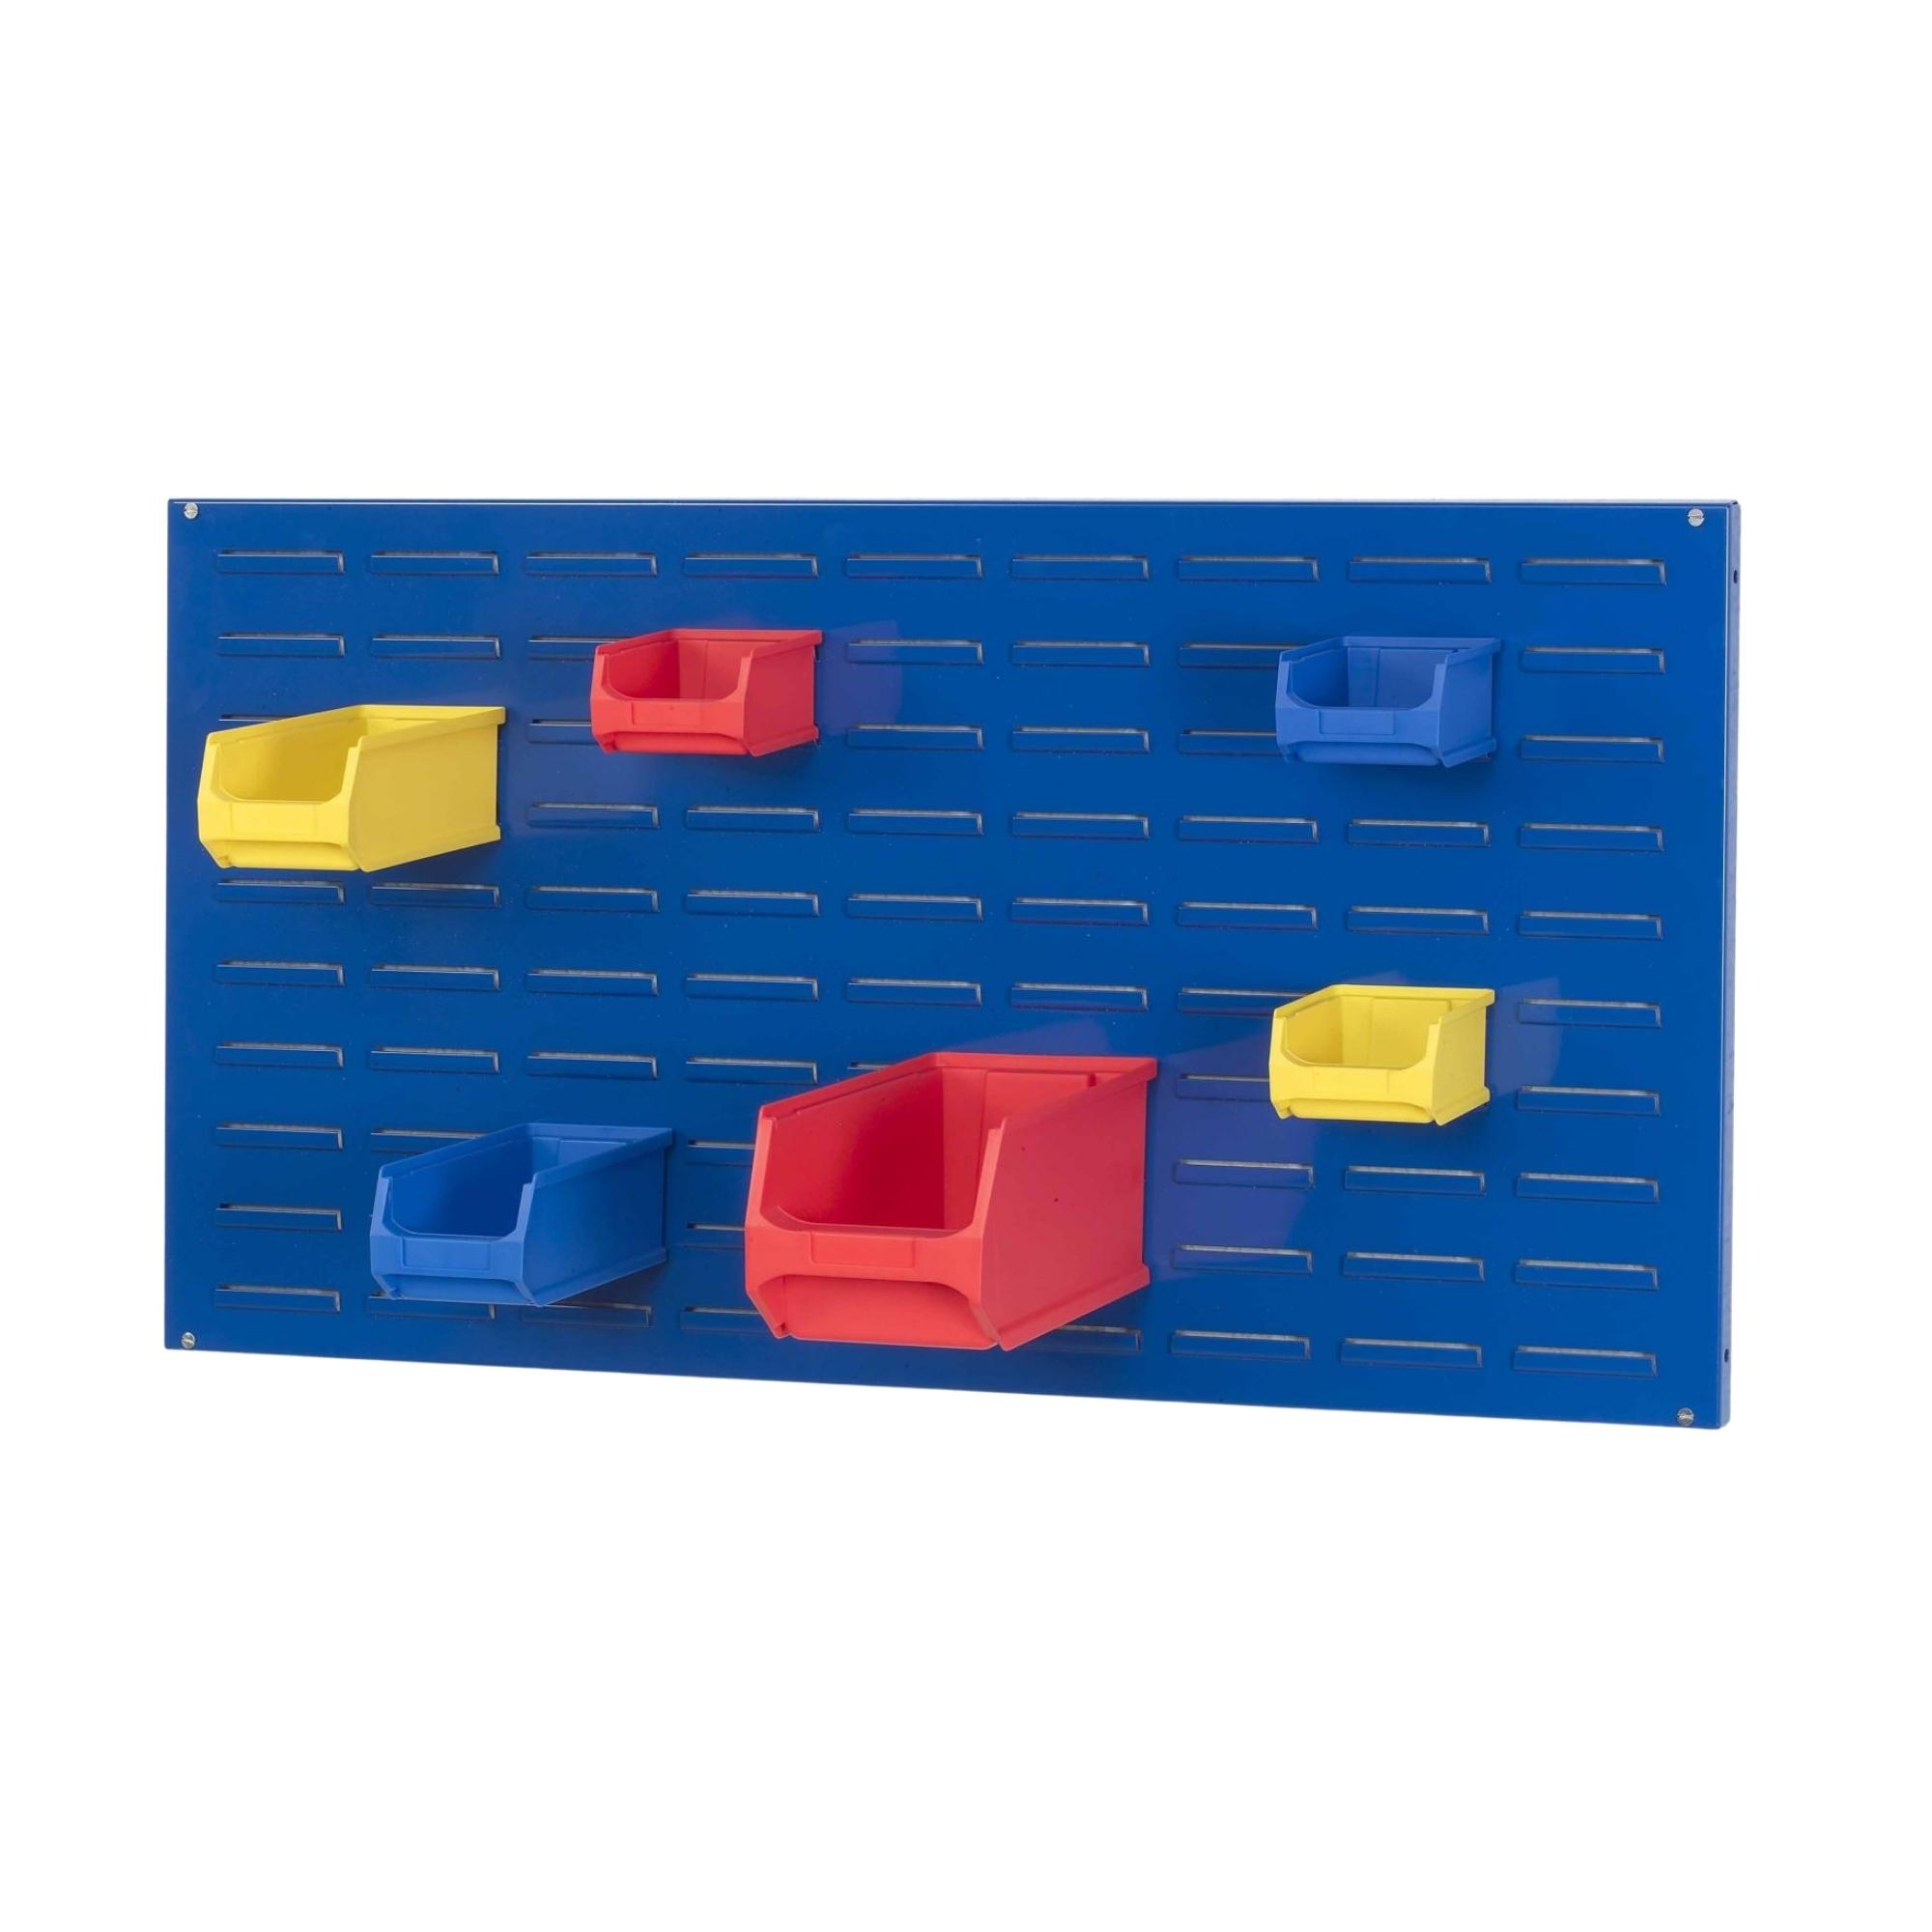 Trägersystem Blaue Systemplatte für Sichtlagerboxen (ohne Sichtlagerboxen) | HxBxT 50x100x2cm | Trägerplatte, Wandhalterung, Kleinteileaufbewahrung, Sortimentsboxhalterung